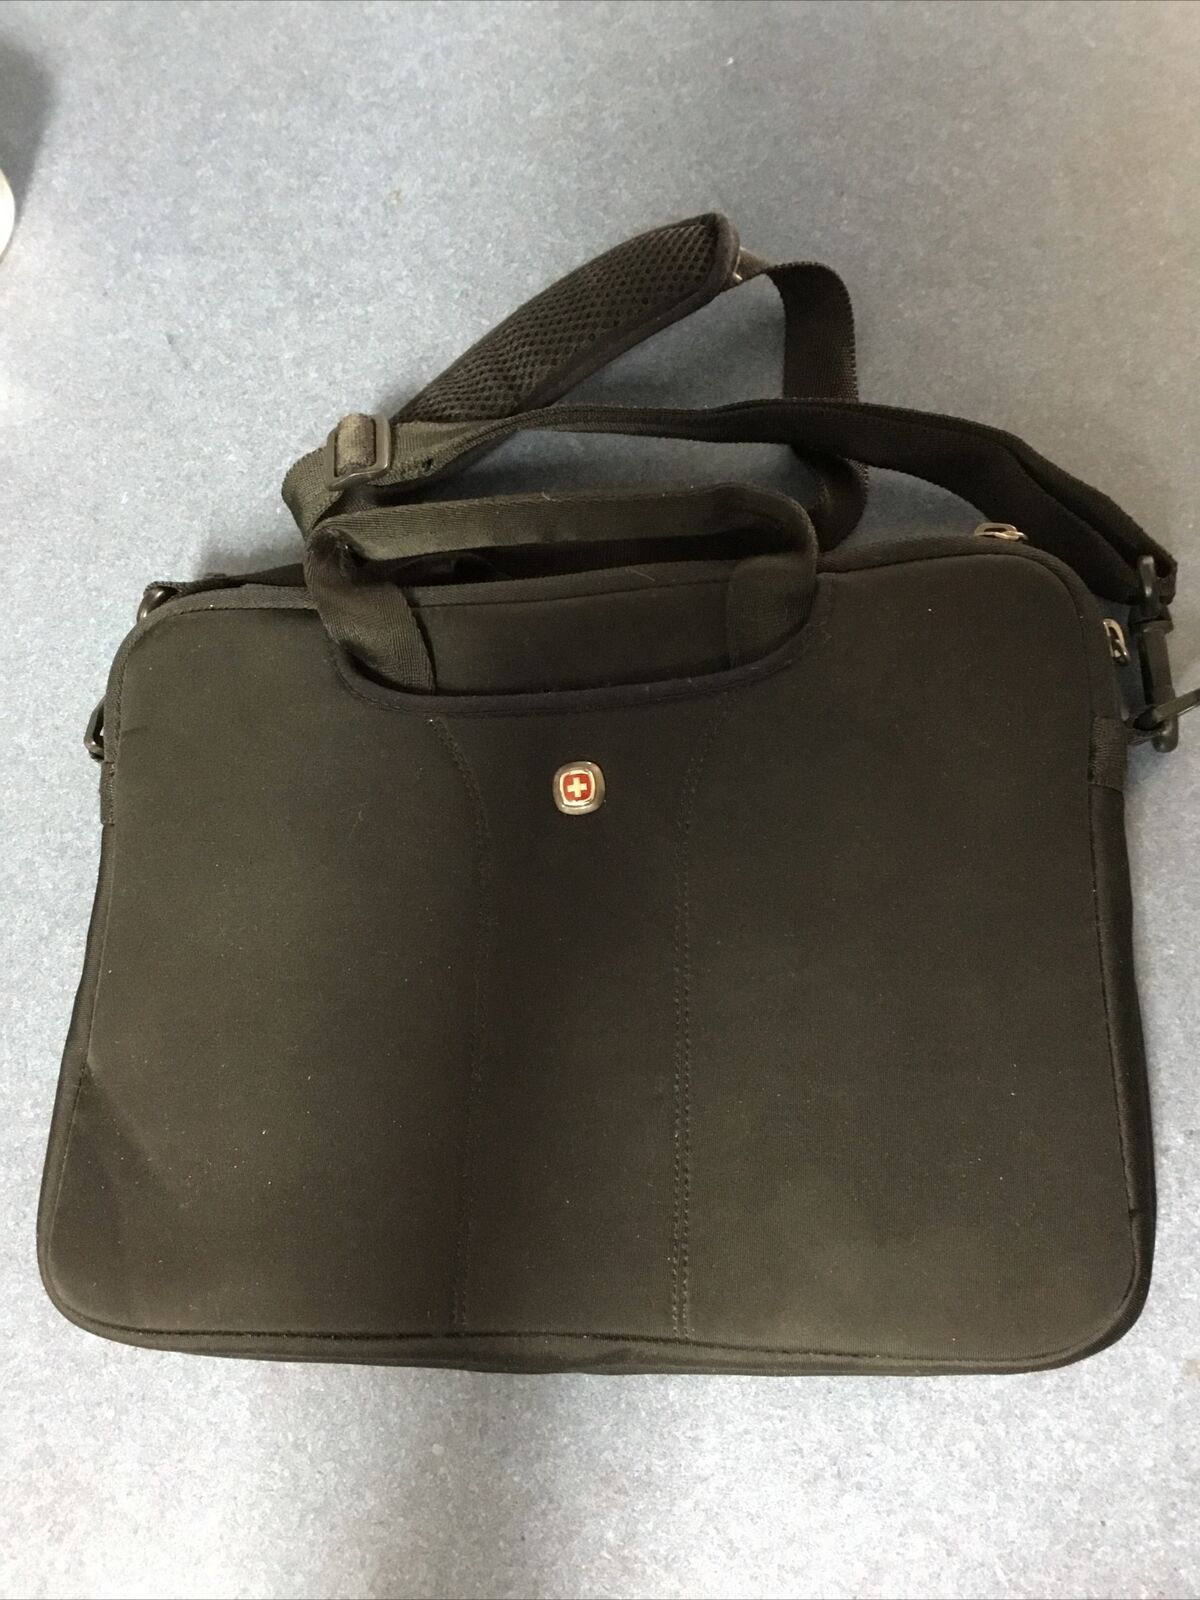 Vintage Wenger Swiss Army Laptop Tablet Computer Case Shoulder Bag Carry-On 10x8